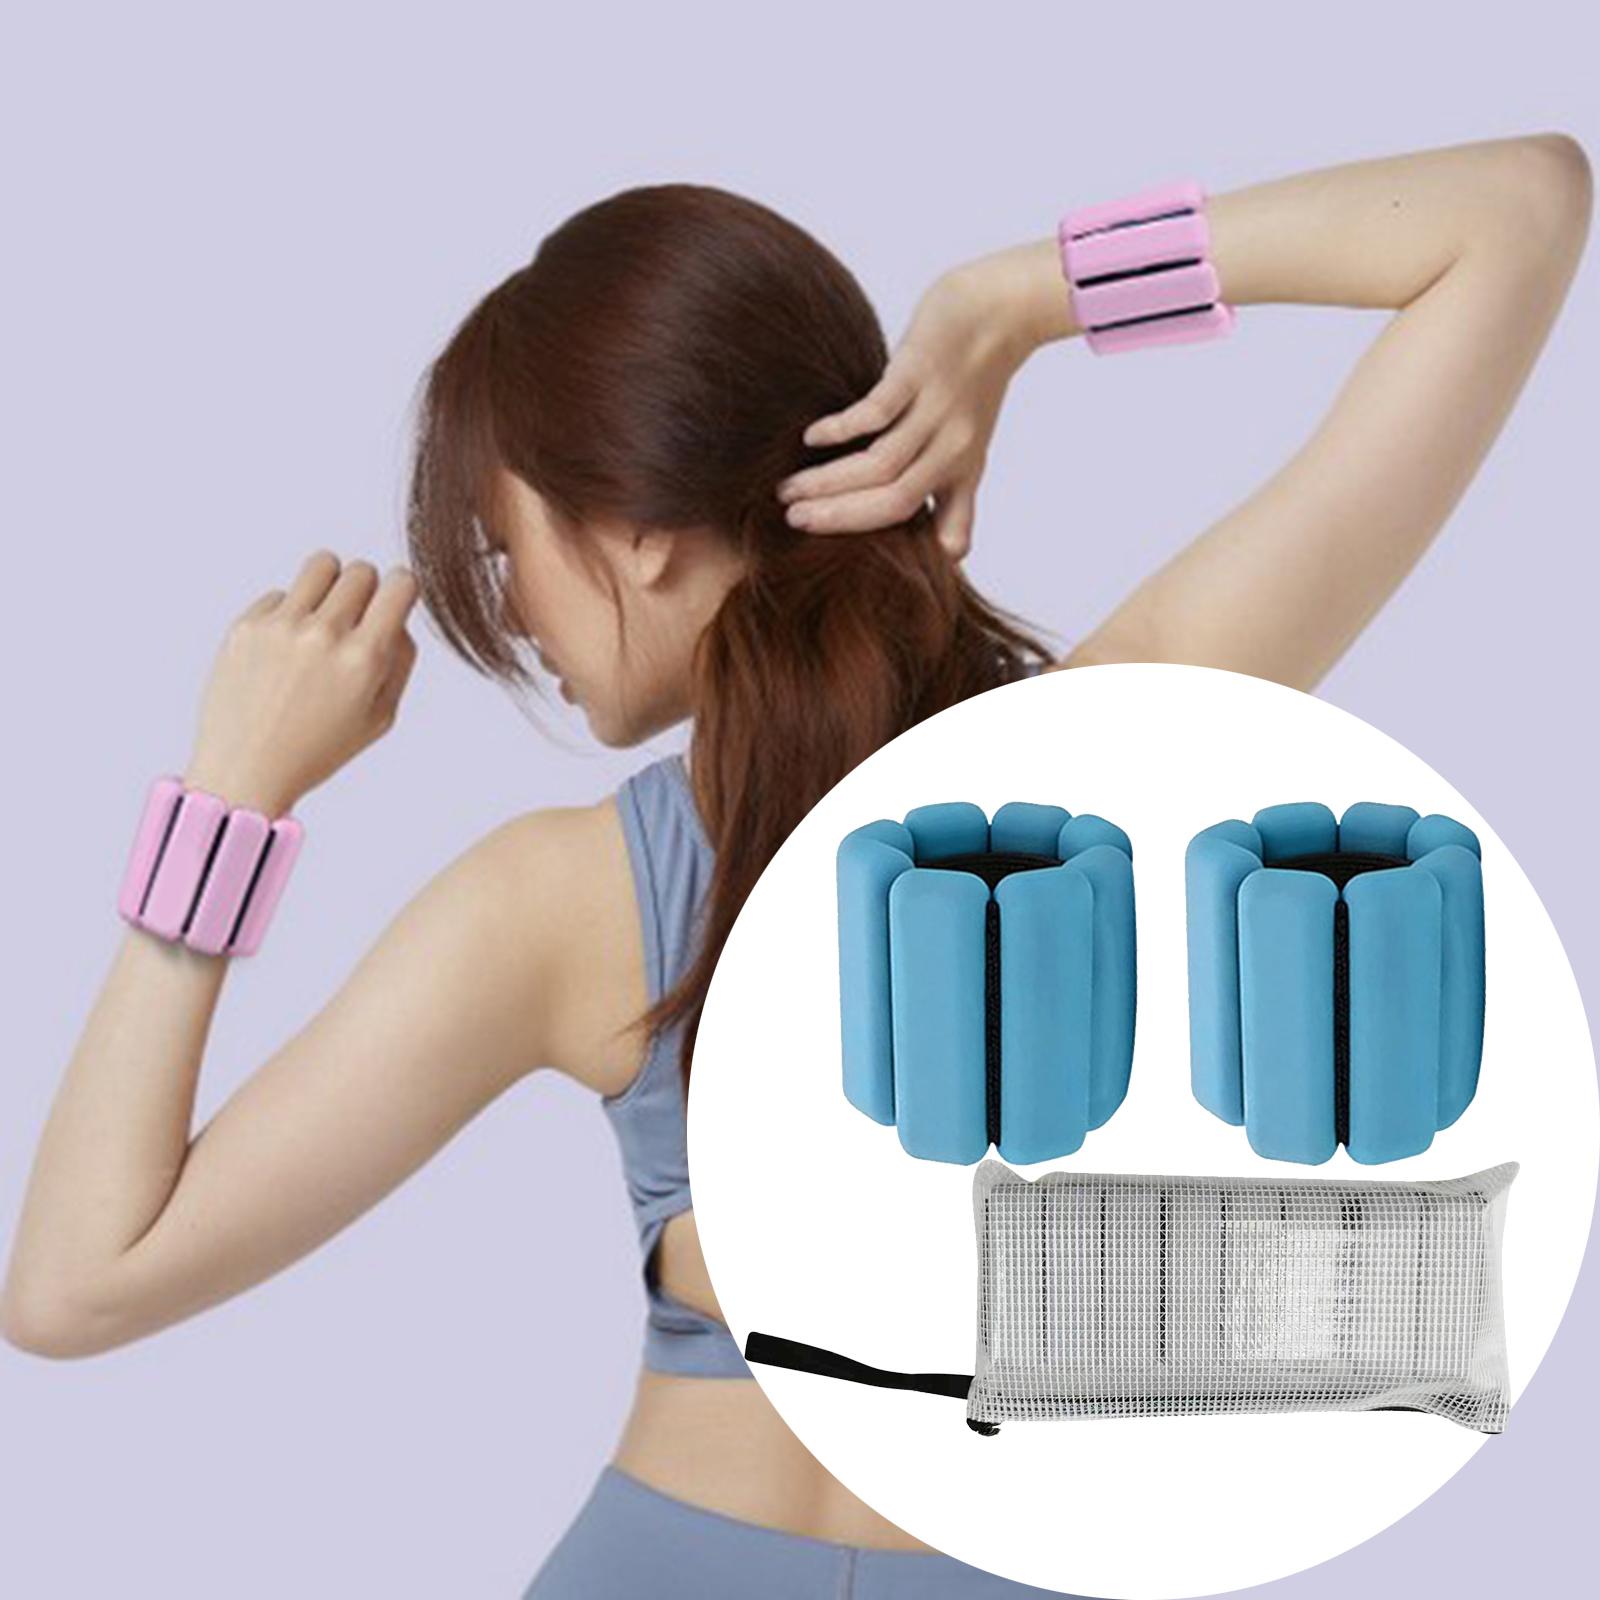 Wrist Weights Bracelet Gym Exercise Yoga Fitness Training Running Blue 2pcs